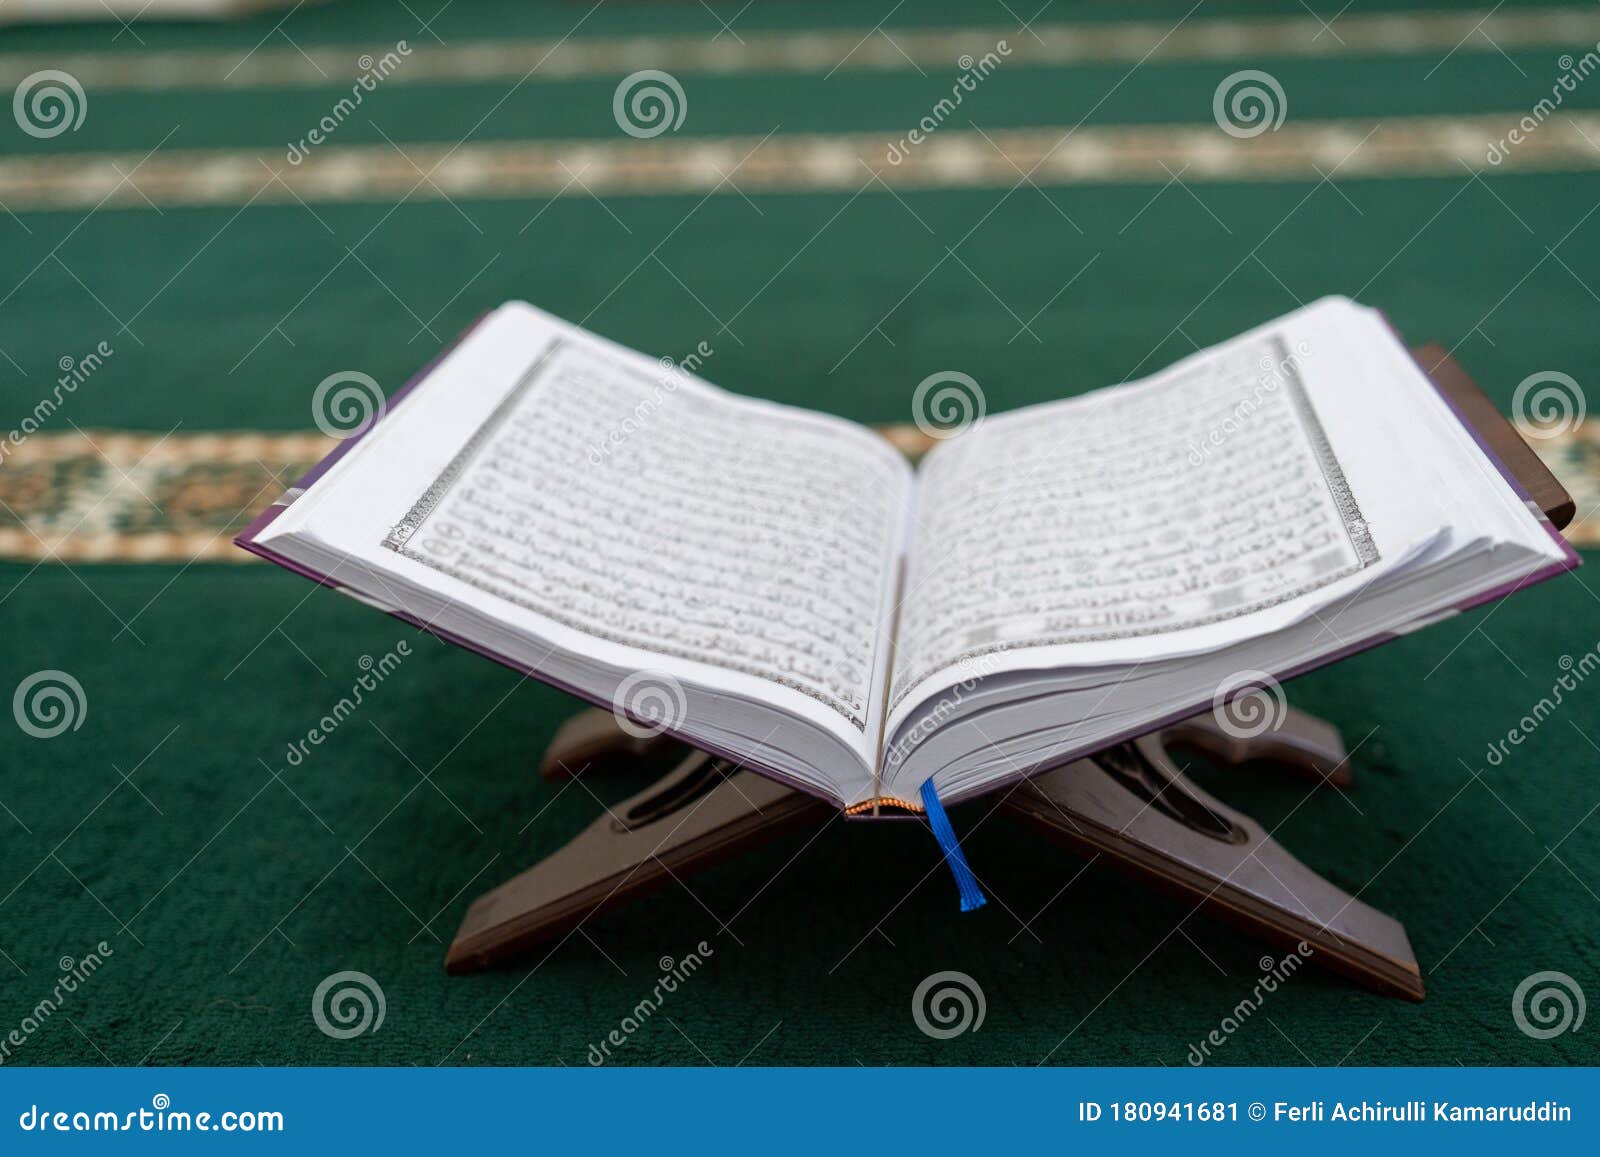 2022年12月29日，圣古兰经中的surah名称是妇女. 古兰经的开页显示苏拉安尼萨 库存照片 - 图片 包括有 çž°ä»£, å ...